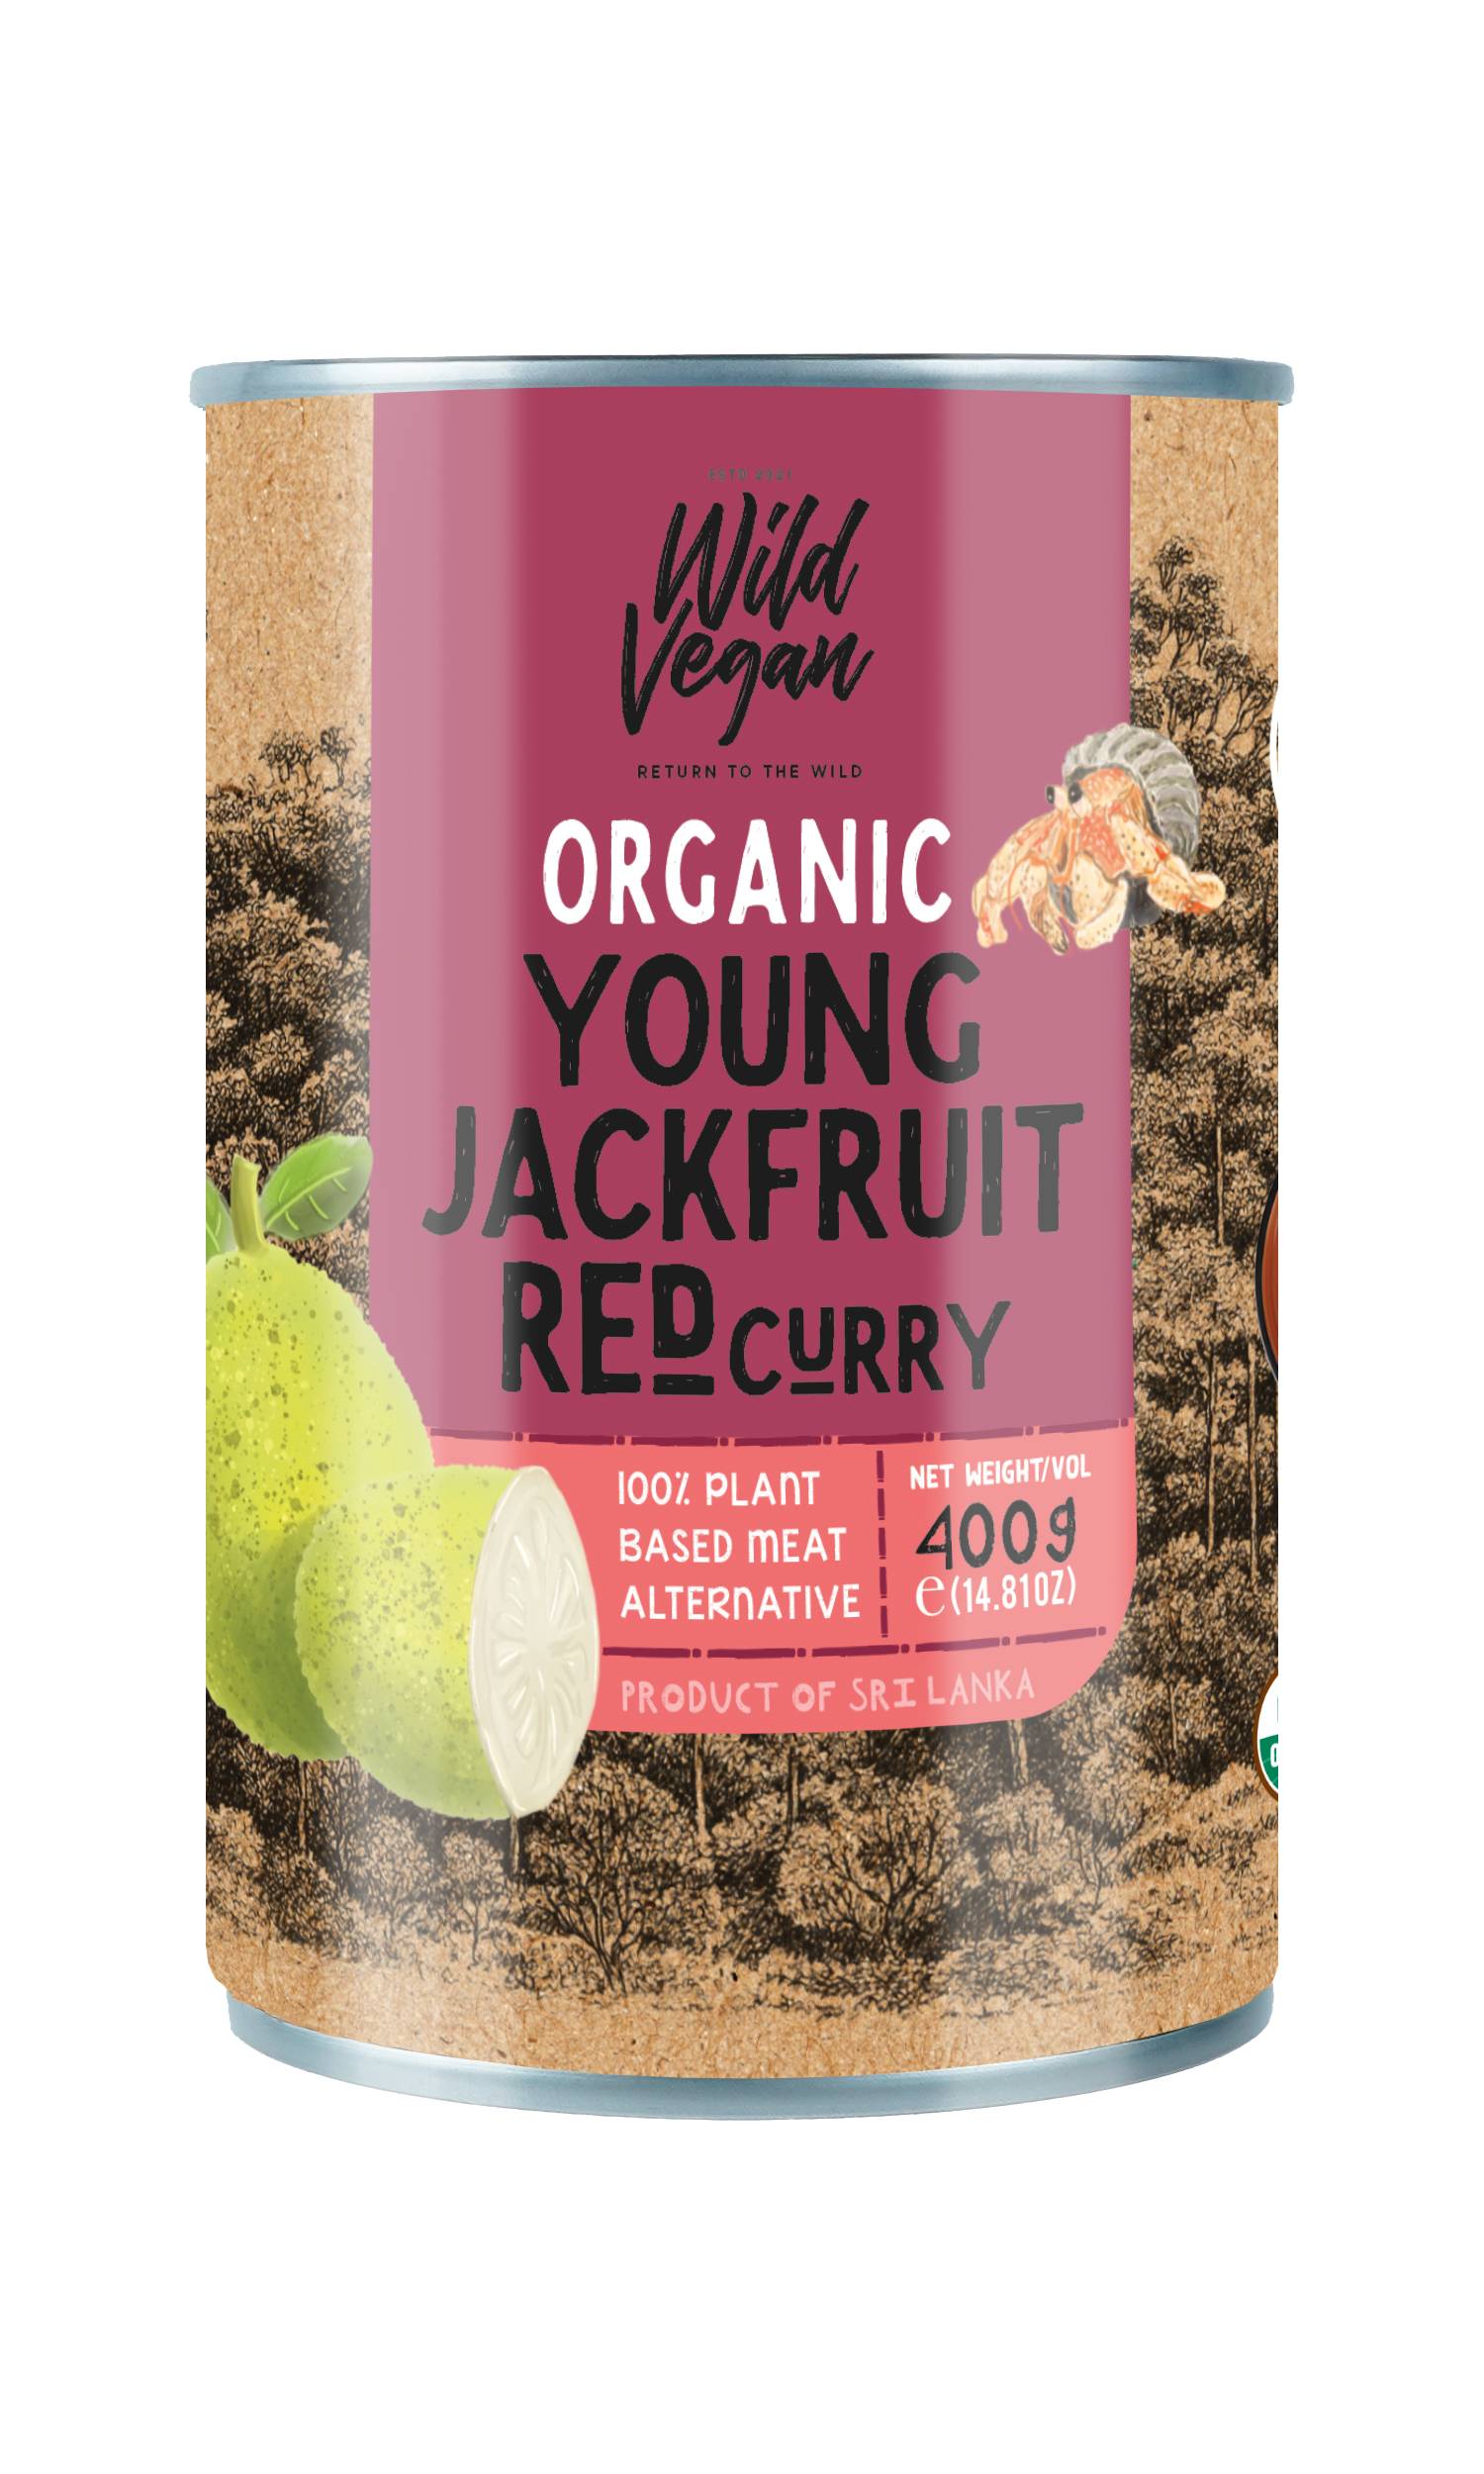 wild vegan Organic Young Jackfruit Red curry